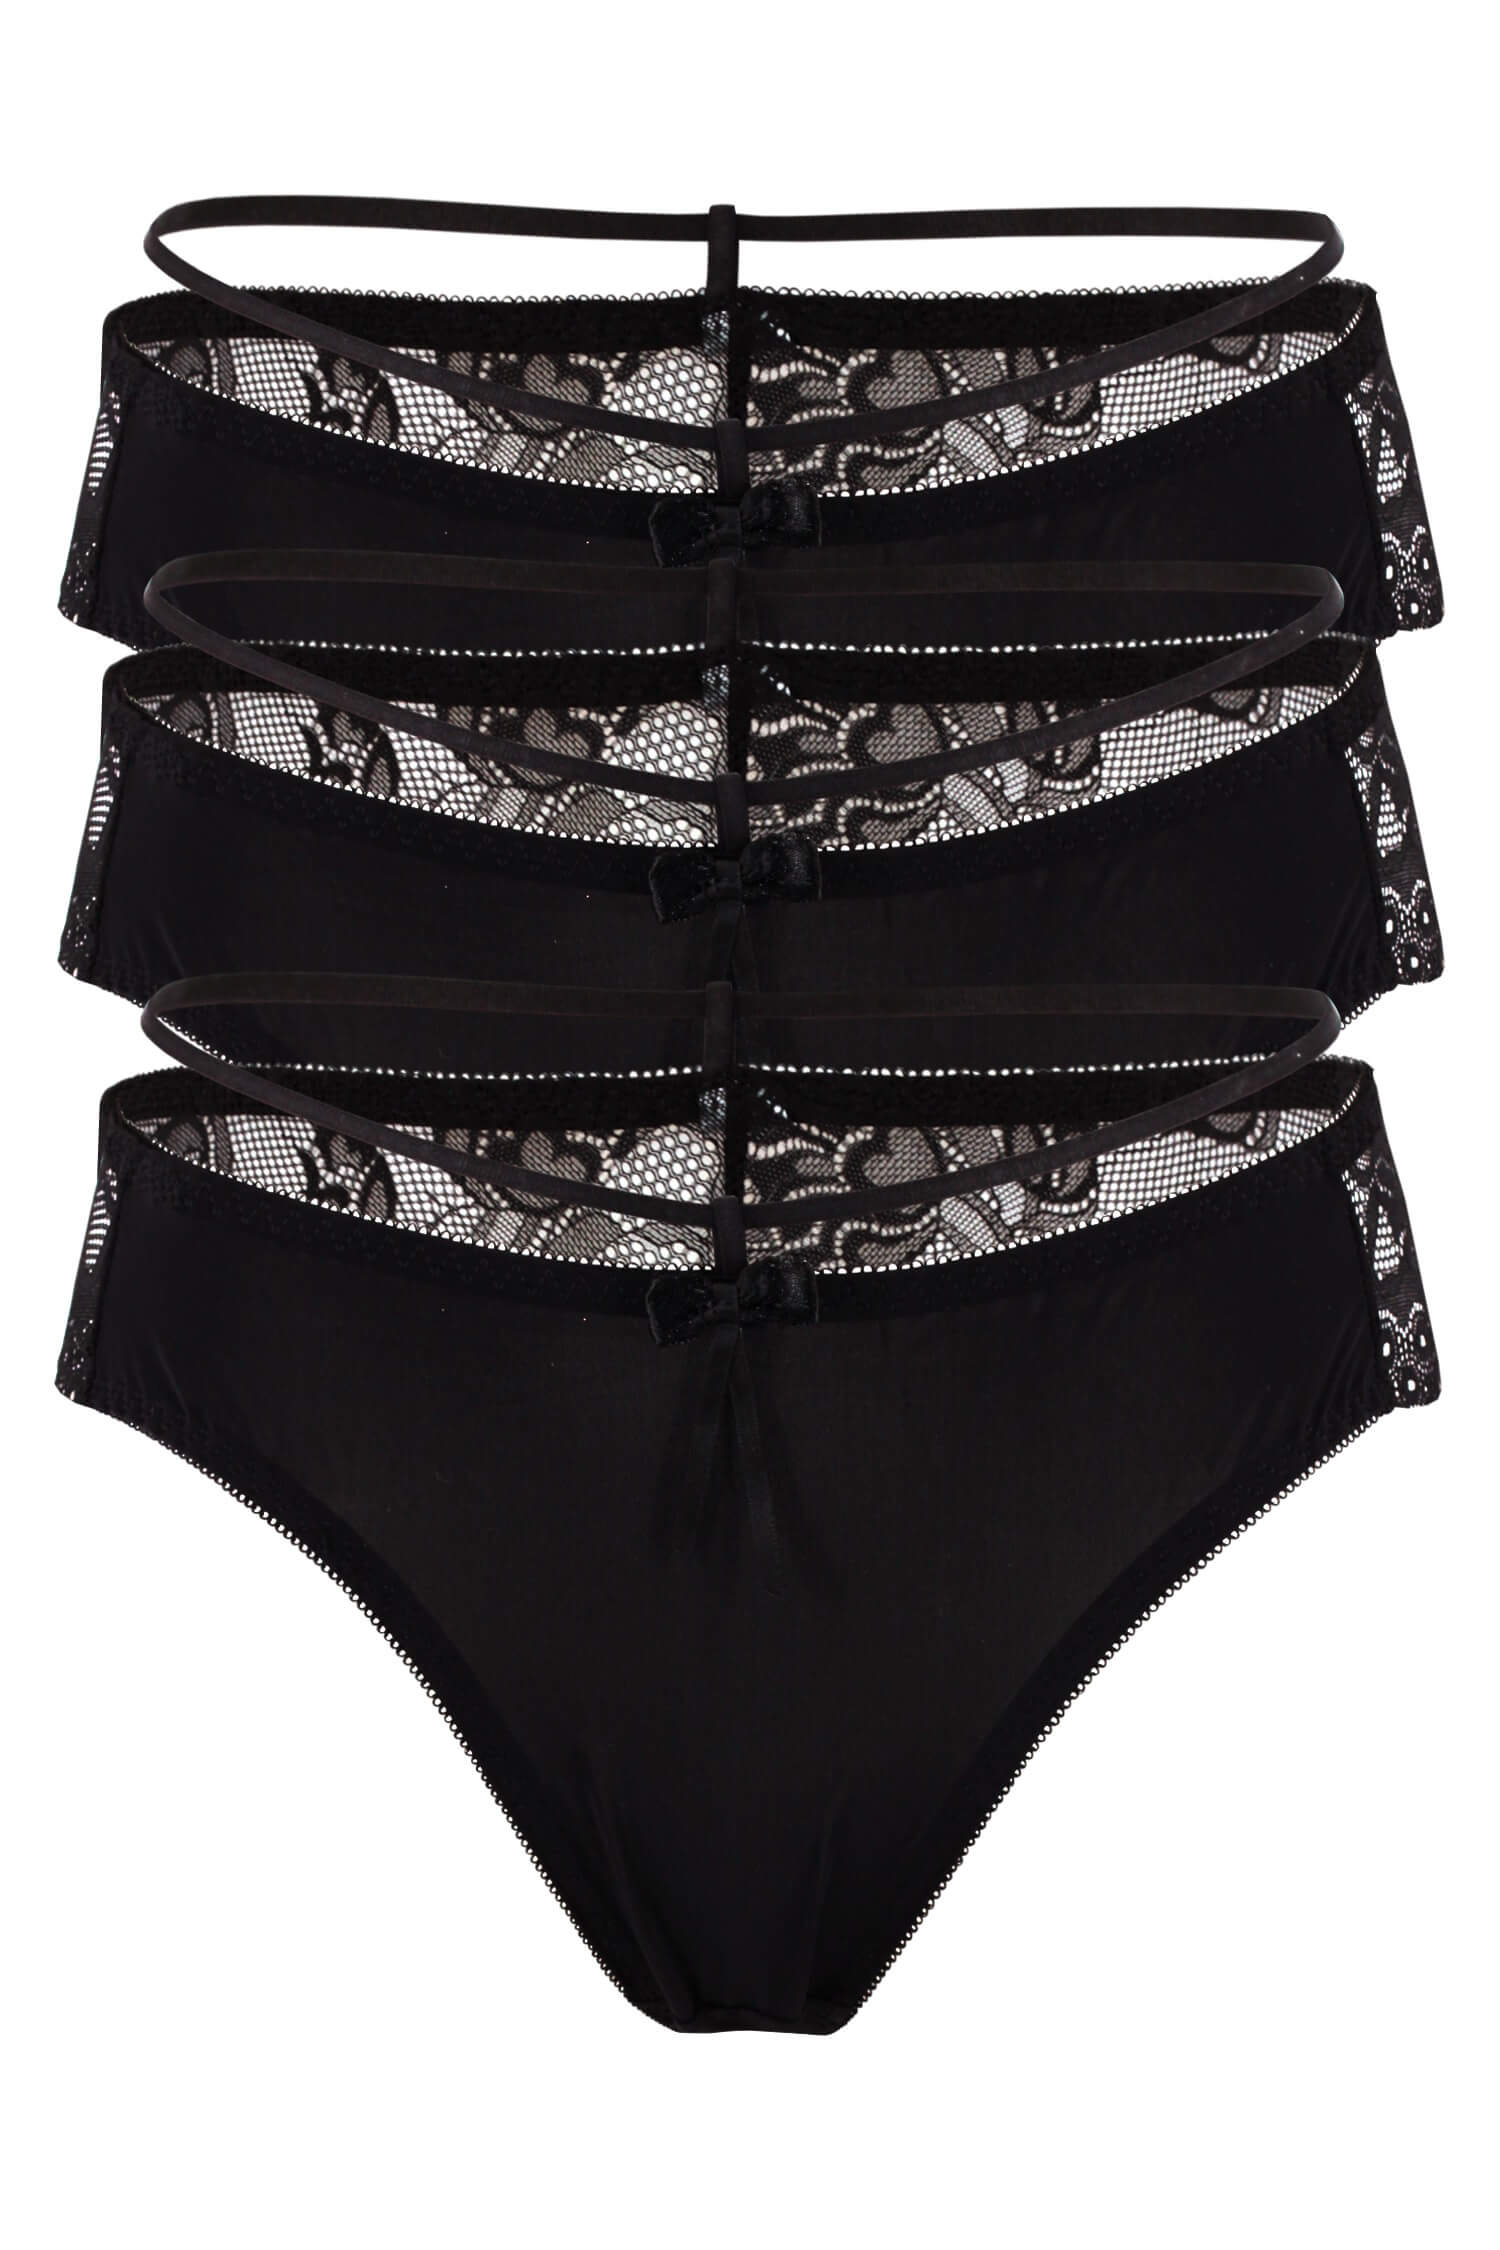 Anastázie Dark kalhotky s krajkou 8690 - 3bal XL černá